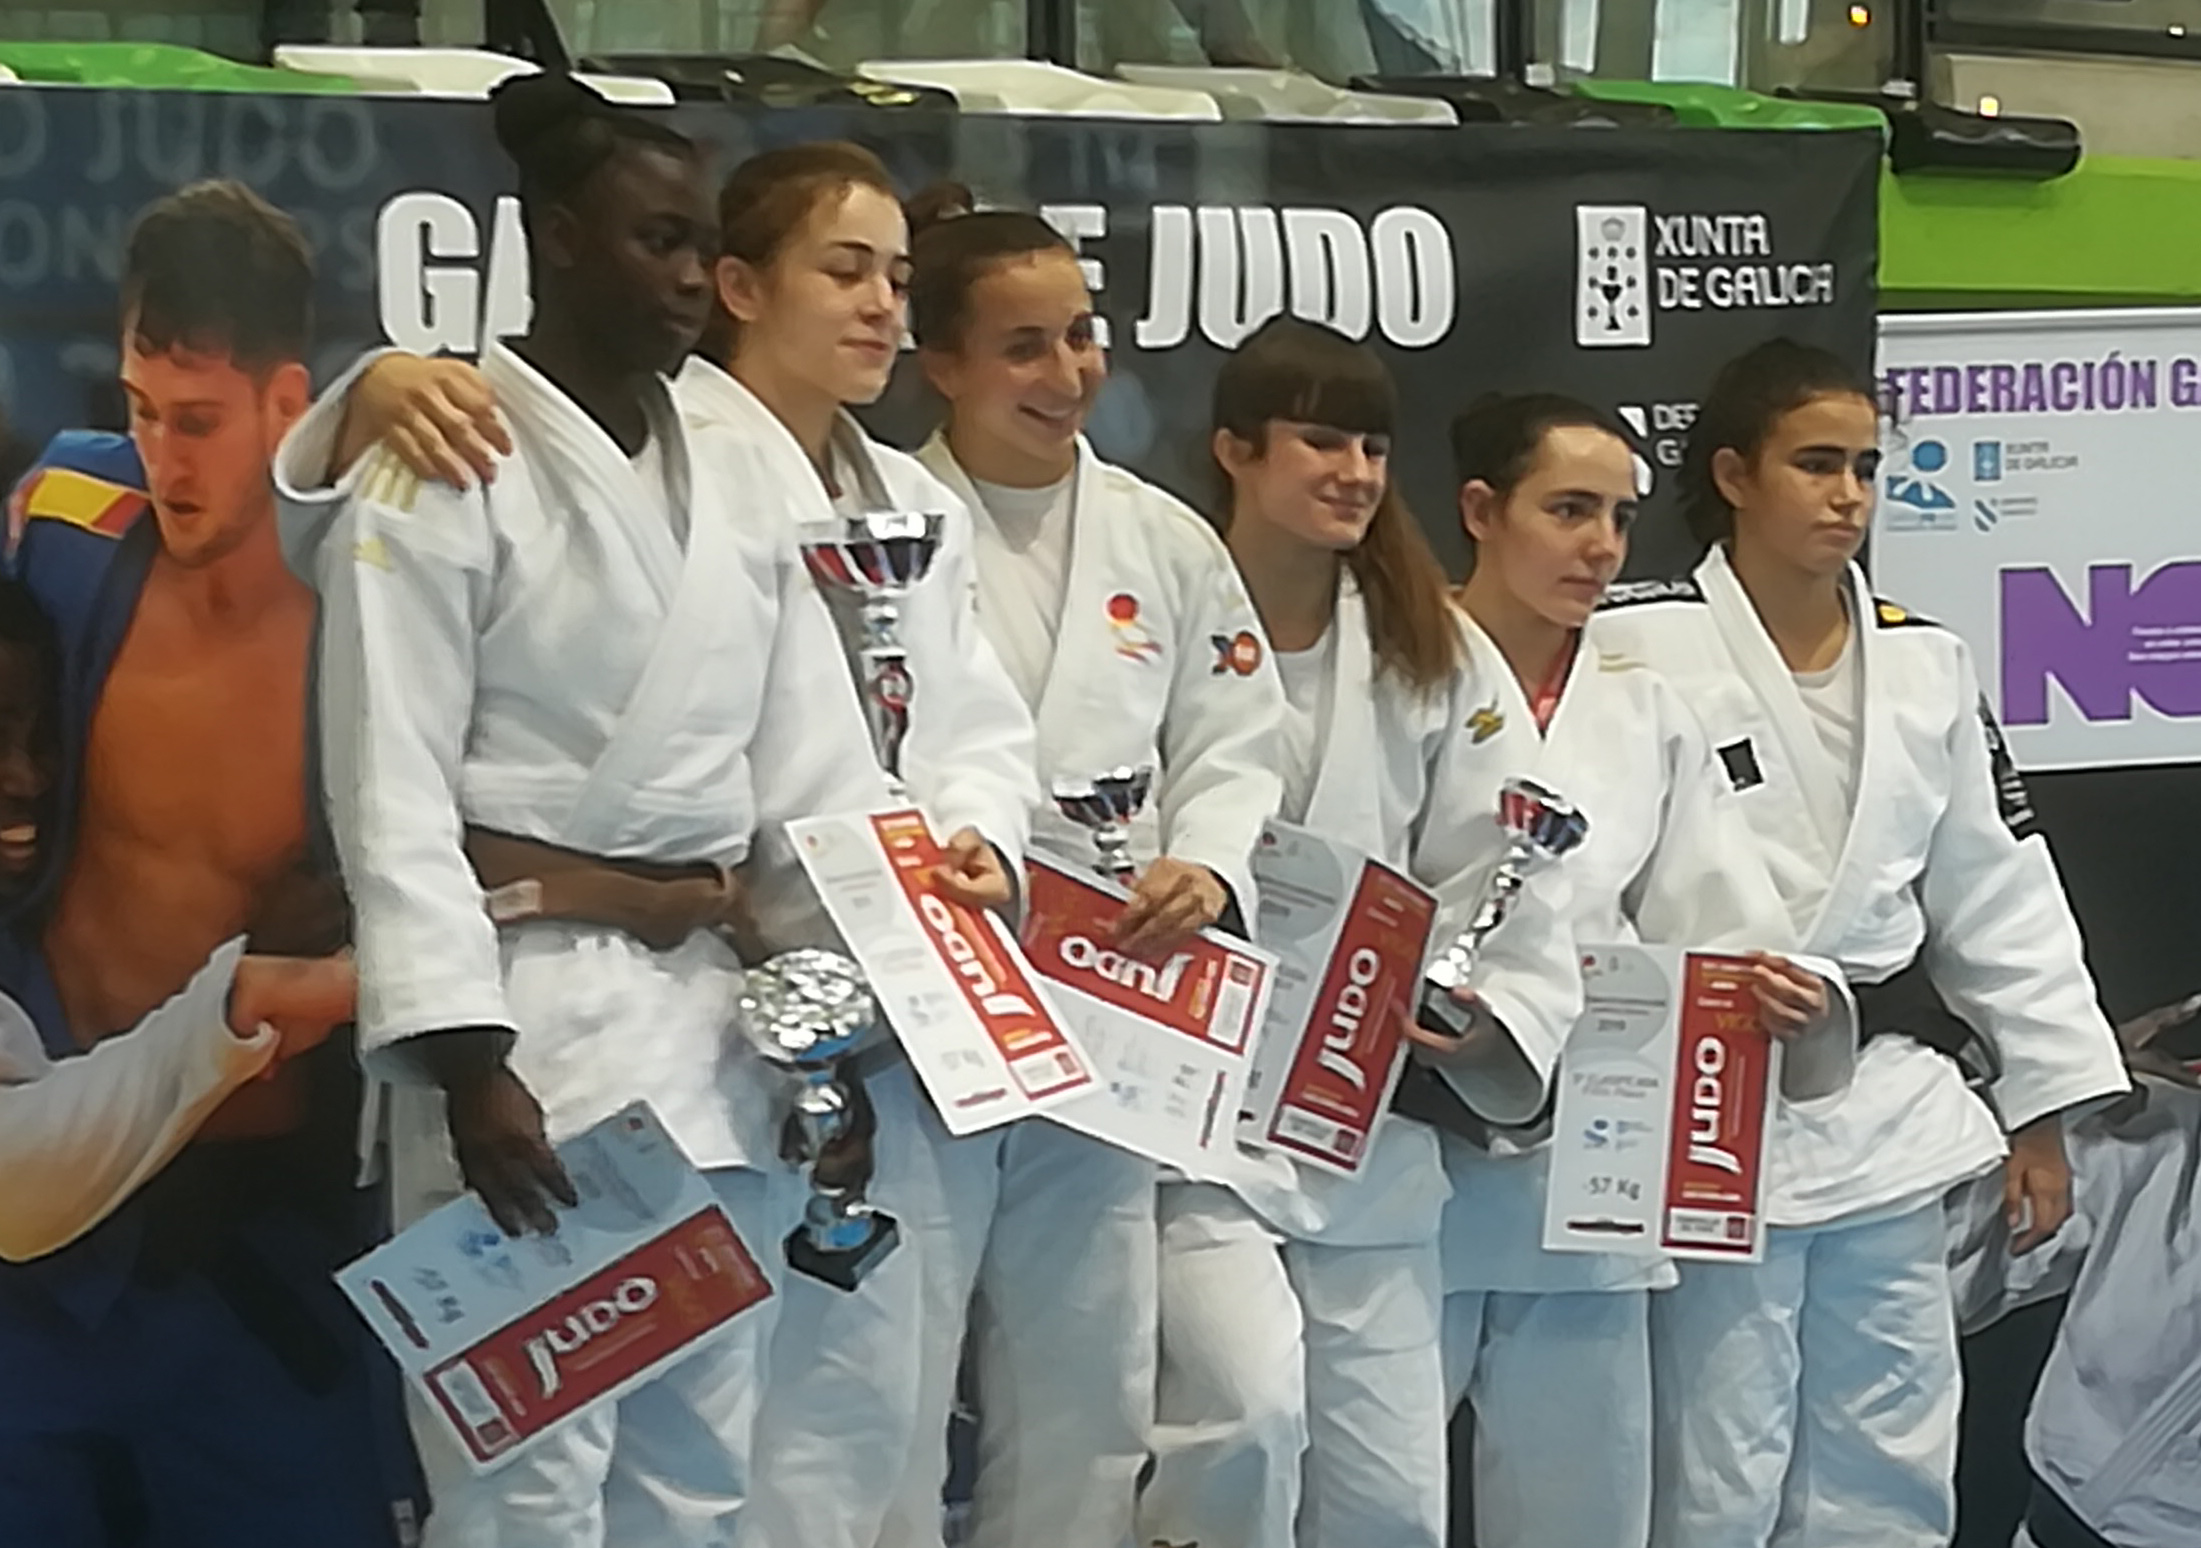 La judoka Deniba Konare debuta con una prometedora medalla de plata en su nueva categoría de peso